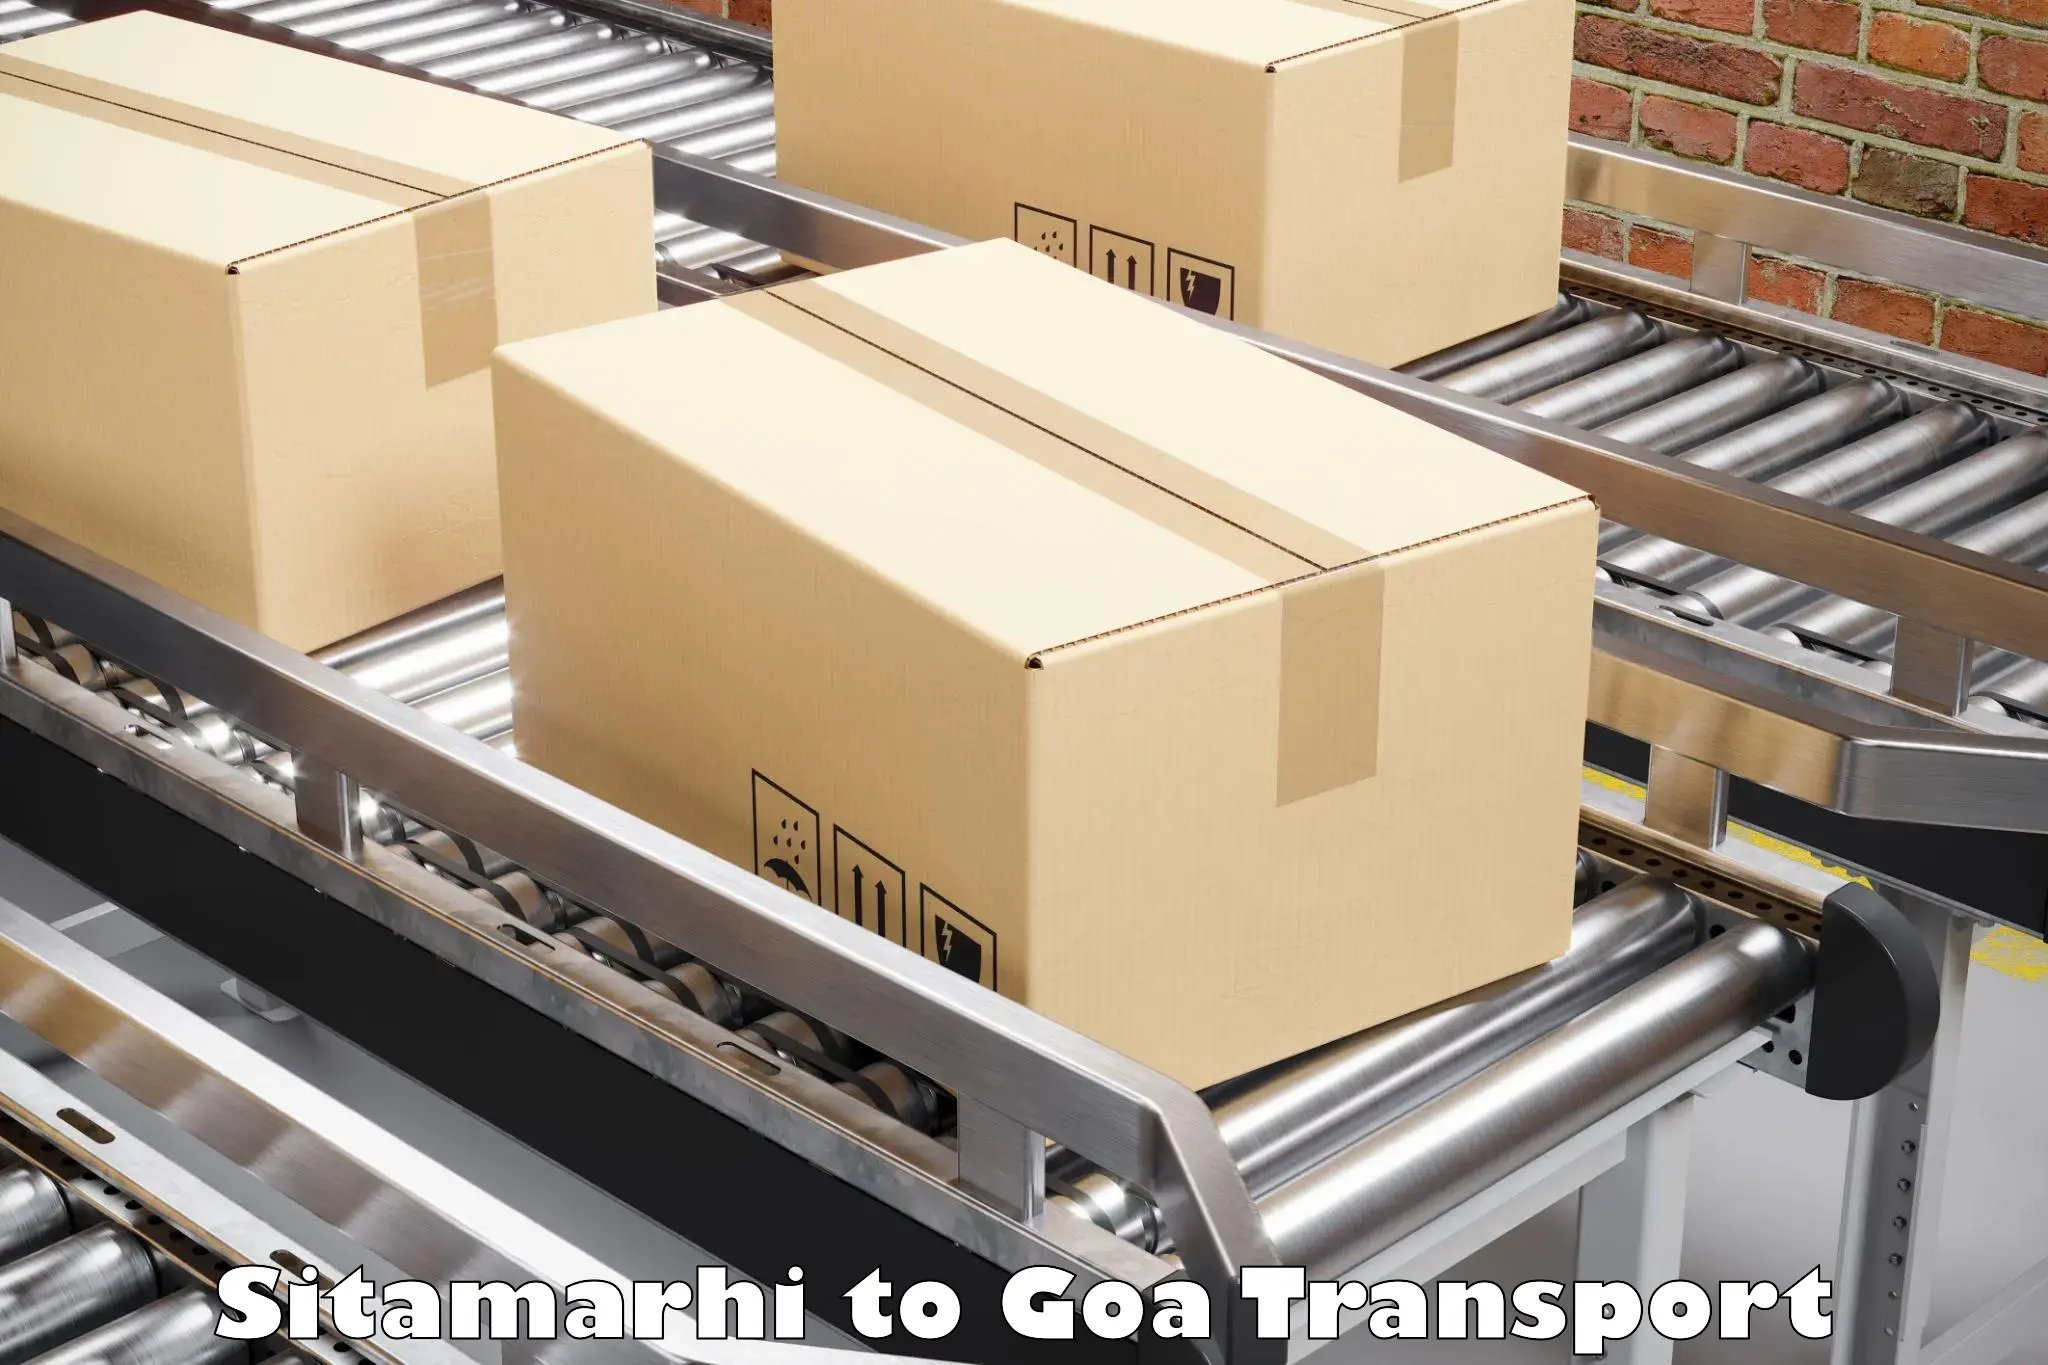 Goods delivery service Sitamarhi to Ponda